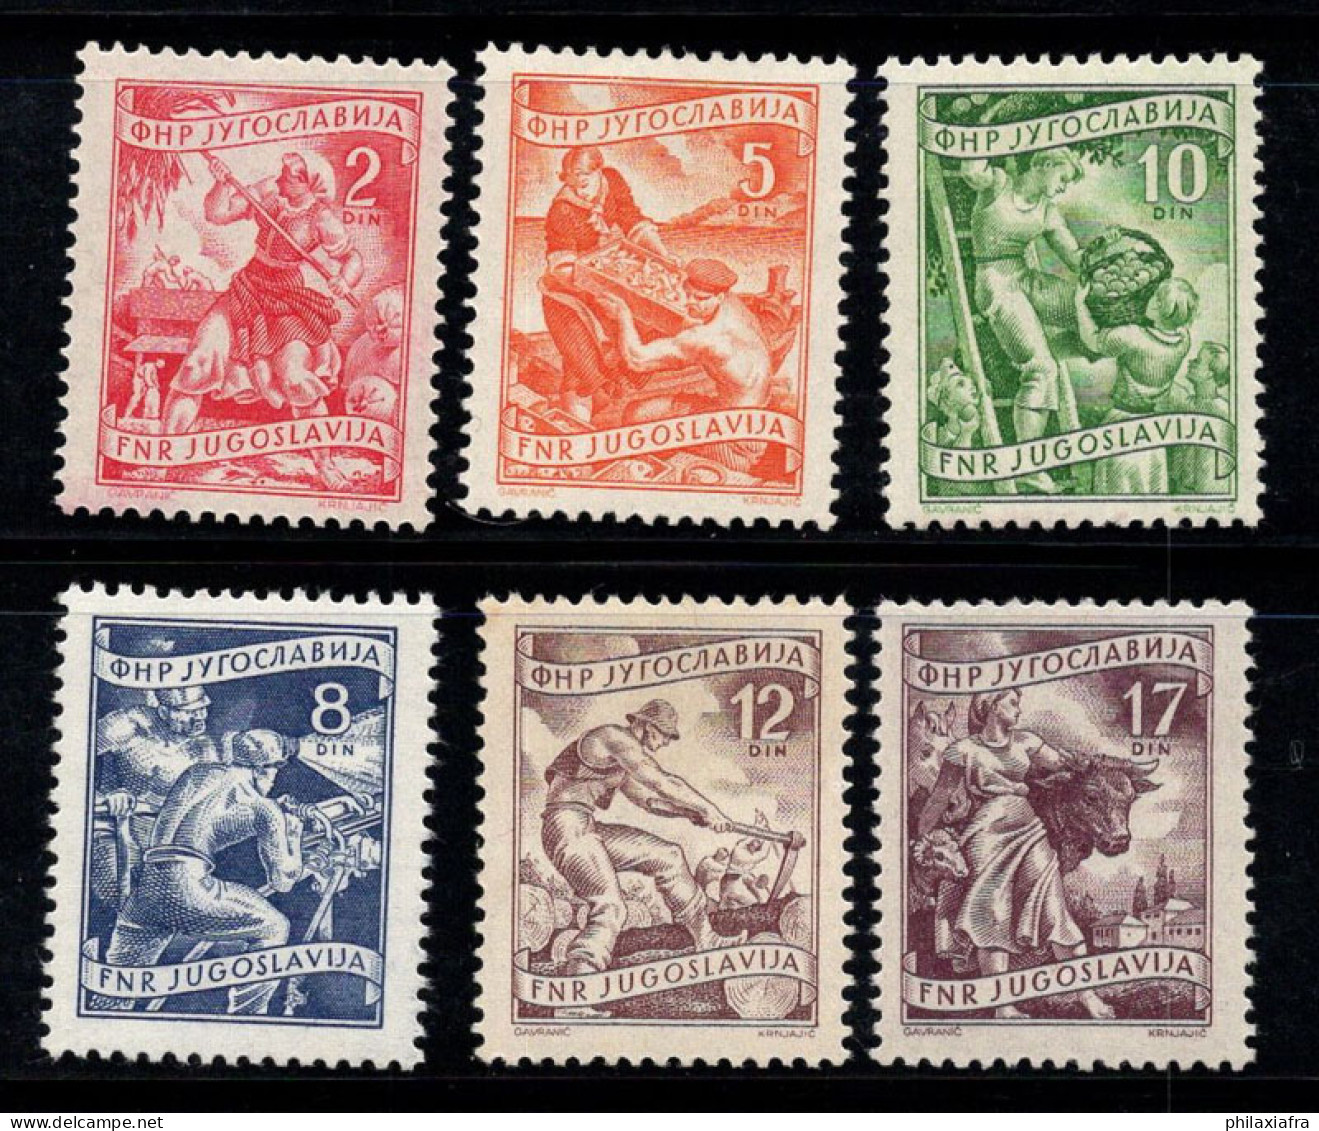 Yougoslavie 1951 Mi. 718-722, 760 Neuf ** 100% Emplois, économie Locale - Unused Stamps